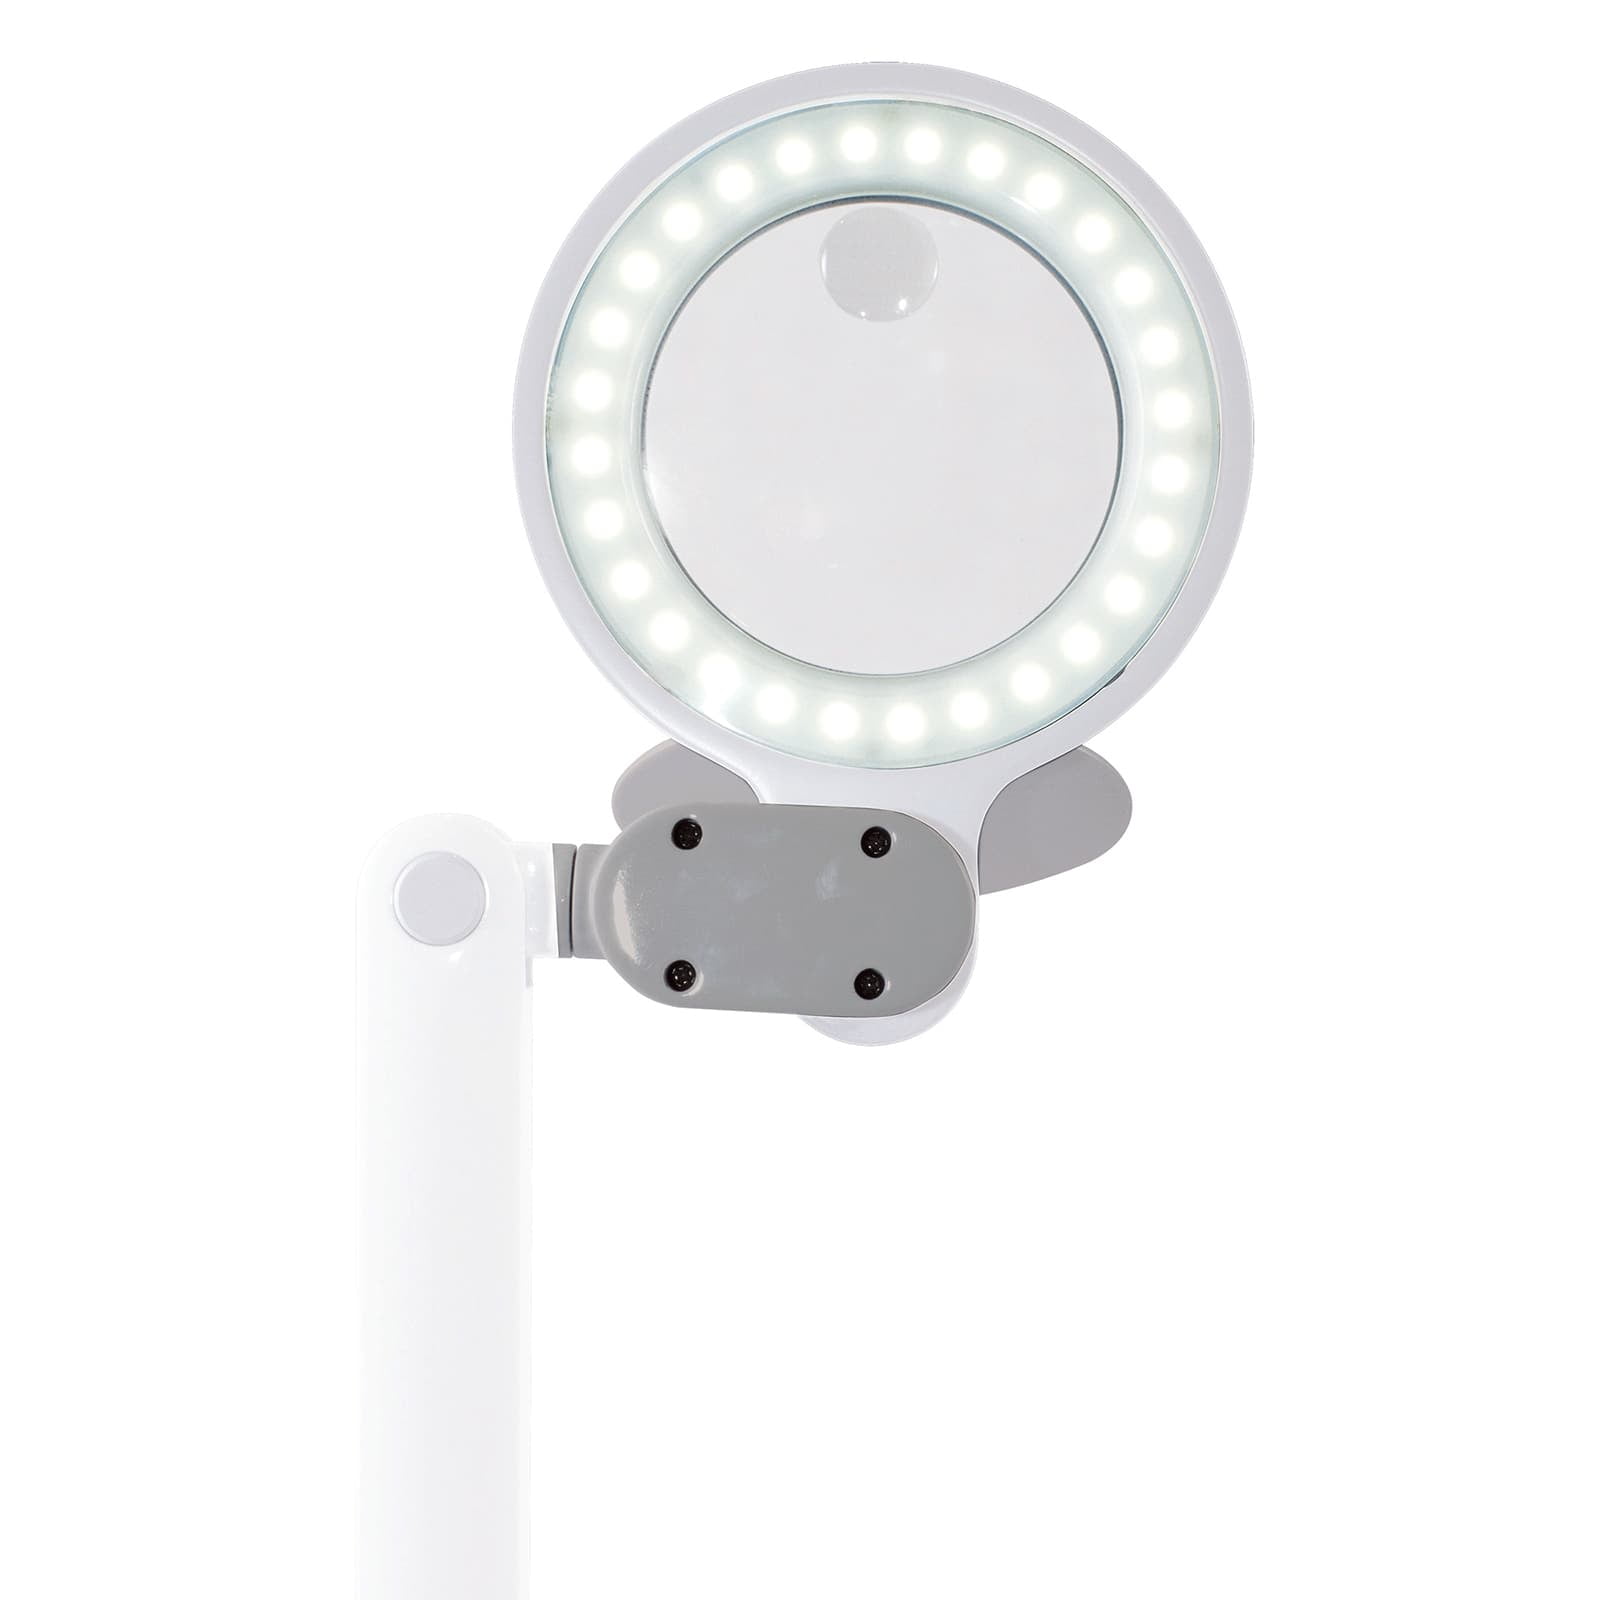 Ottlite Space-Saving LED Magnifier Desk Lamp